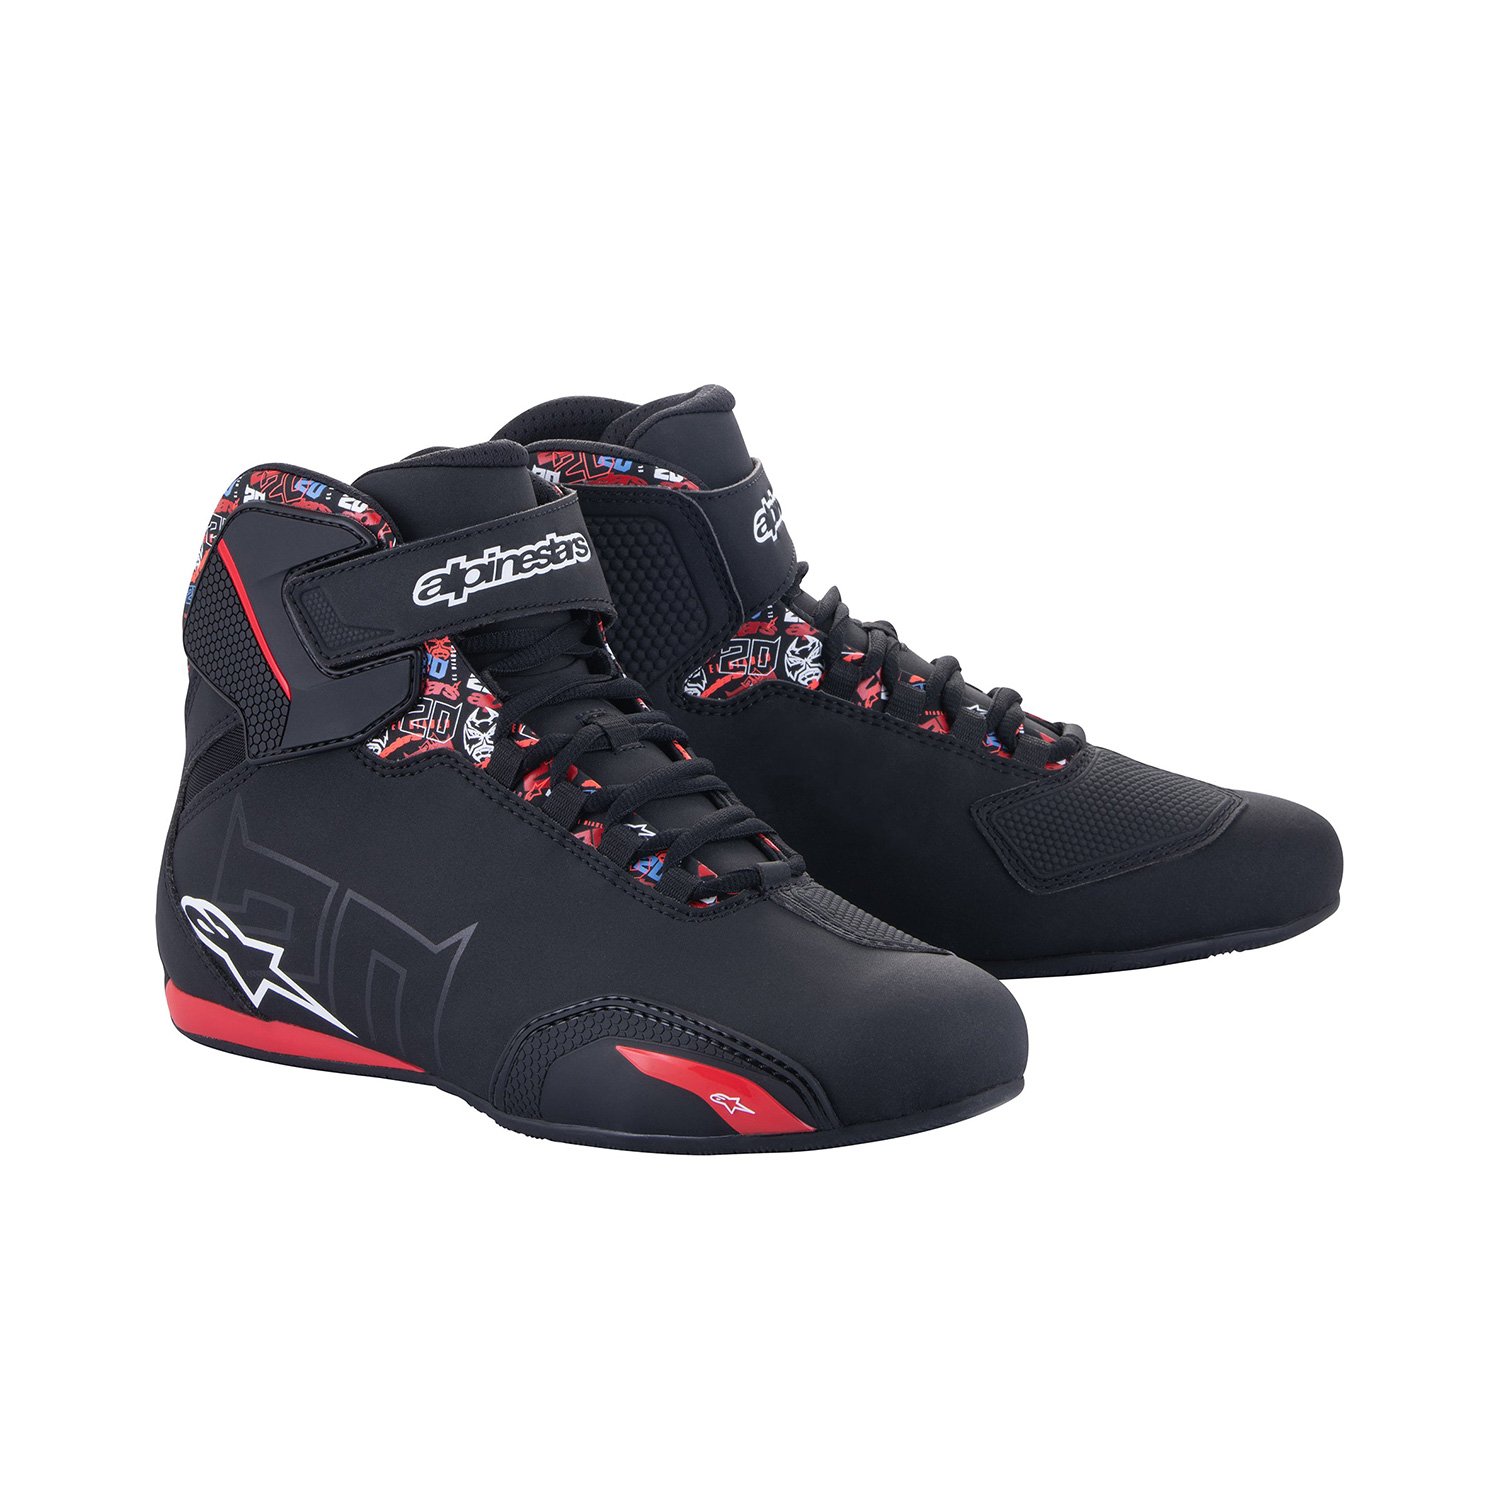 Image of Alpinestars FQ20 Sektor Shoes Black Bright Red Size US 11 EN